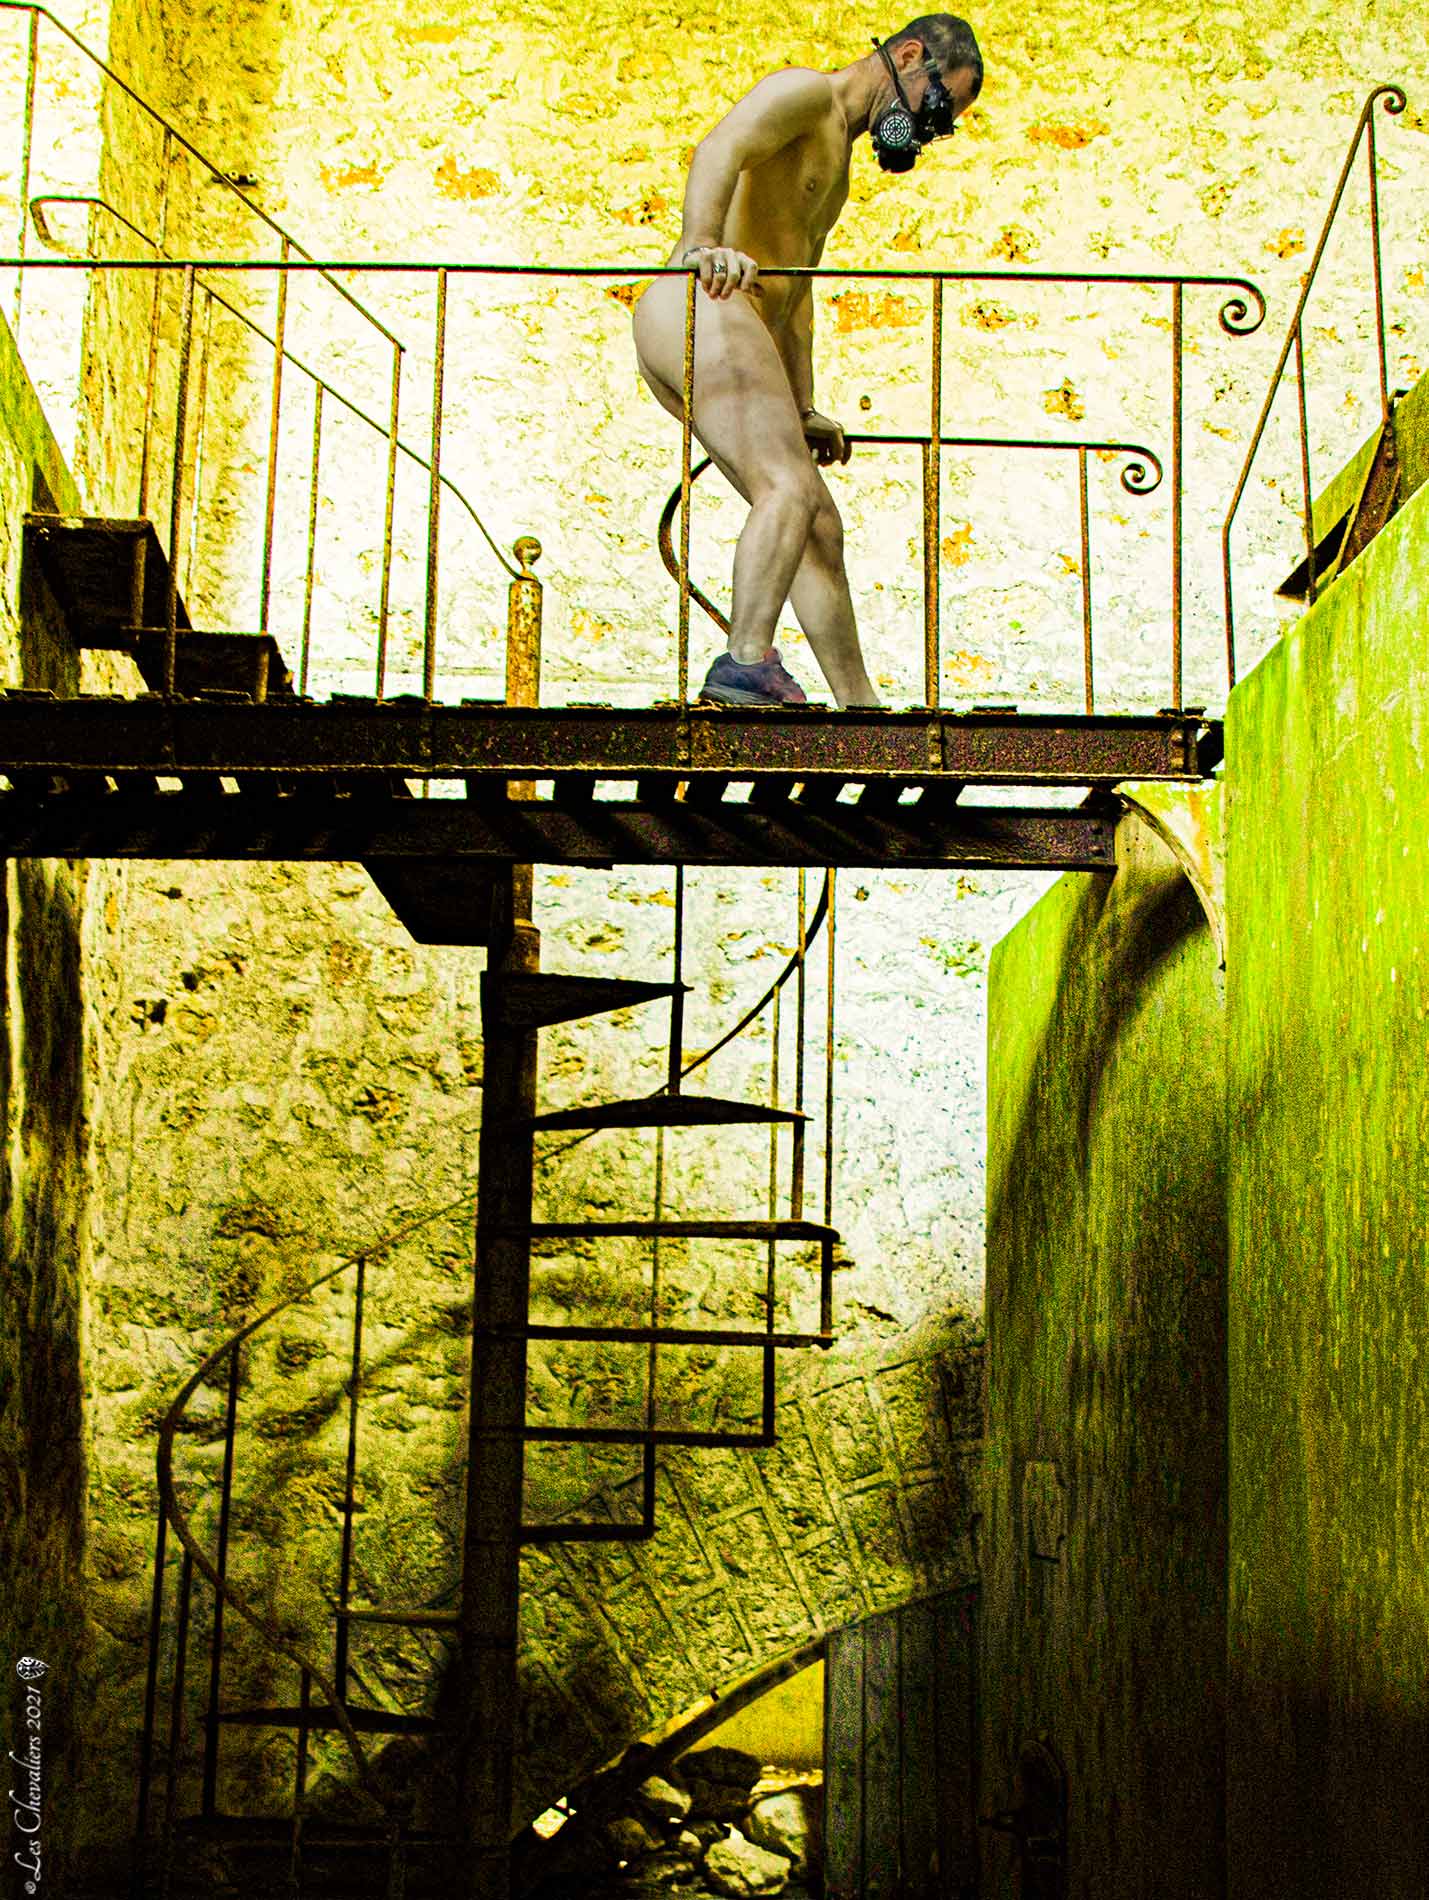 L'escalier métallique, une photo de la collection "Kataclysm_e ou les effets du cataclysme climatique" par Les Chevaliers Photographes.